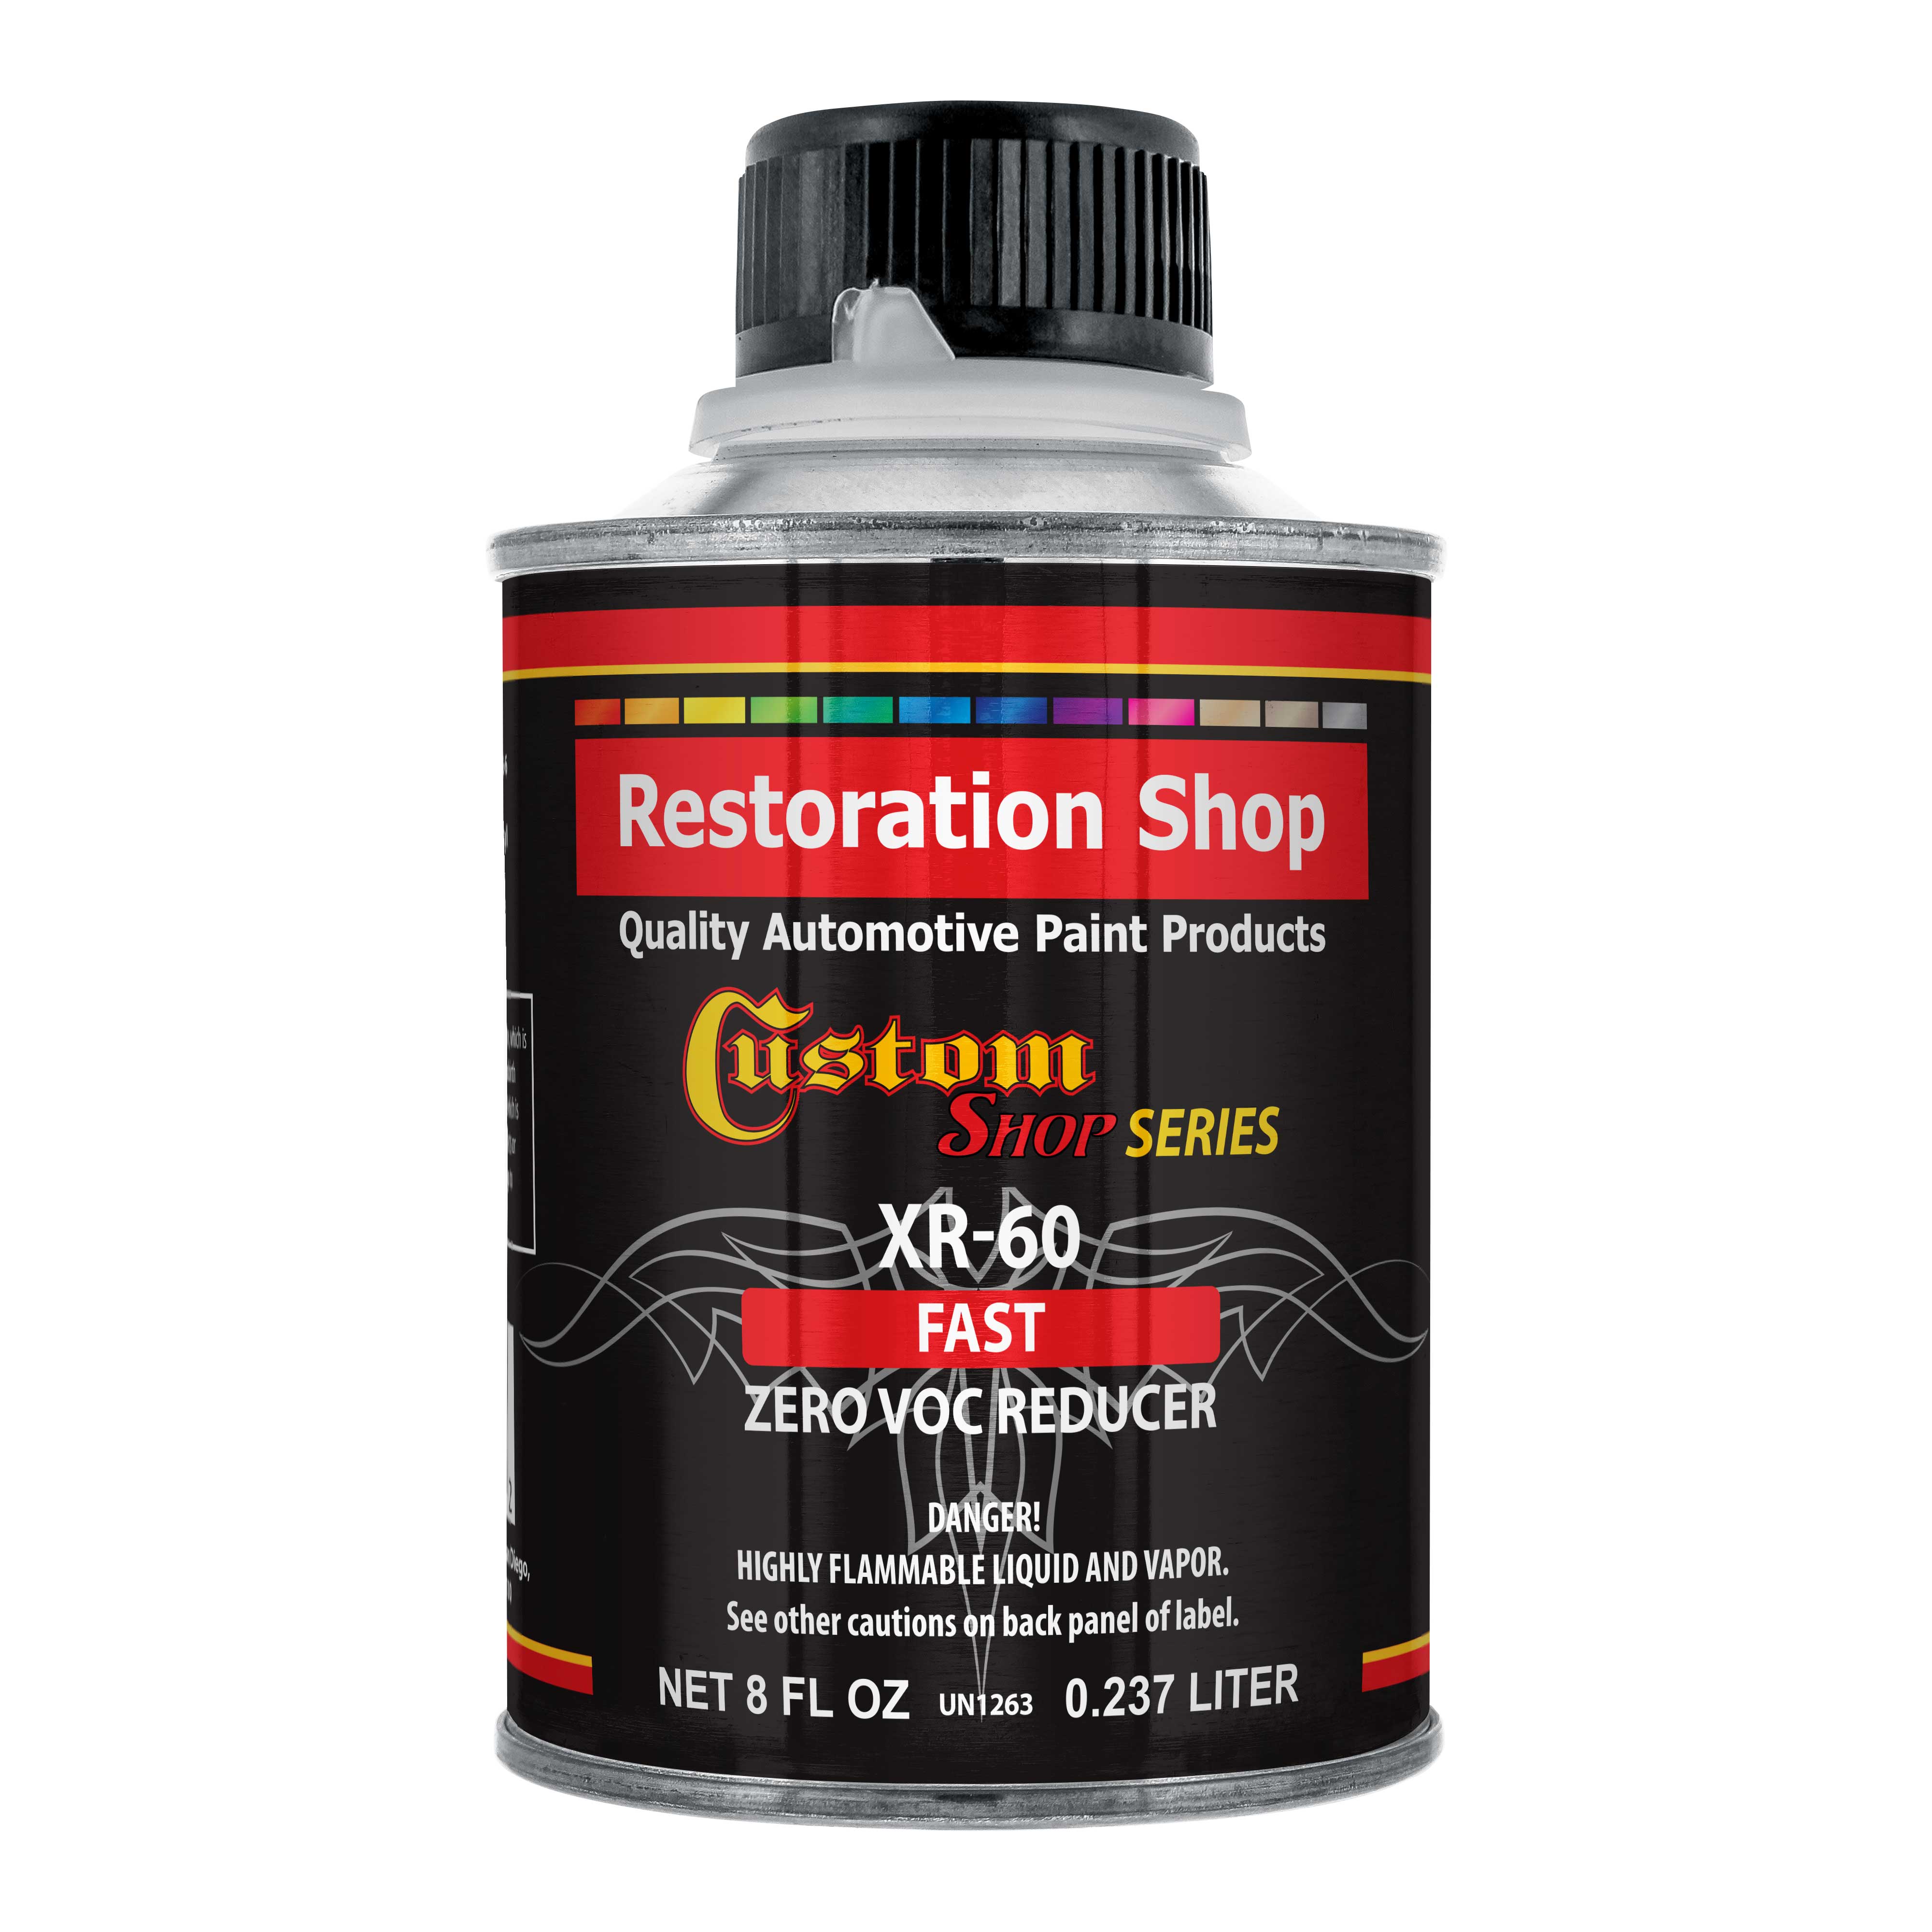 Restoration Shop / Custom Shop - XR60 Fast Zero VOC Urethane Reducer (Half Pint/8 Ounce) for Automotive & Industrial Paint Use for Low VOC Compliance